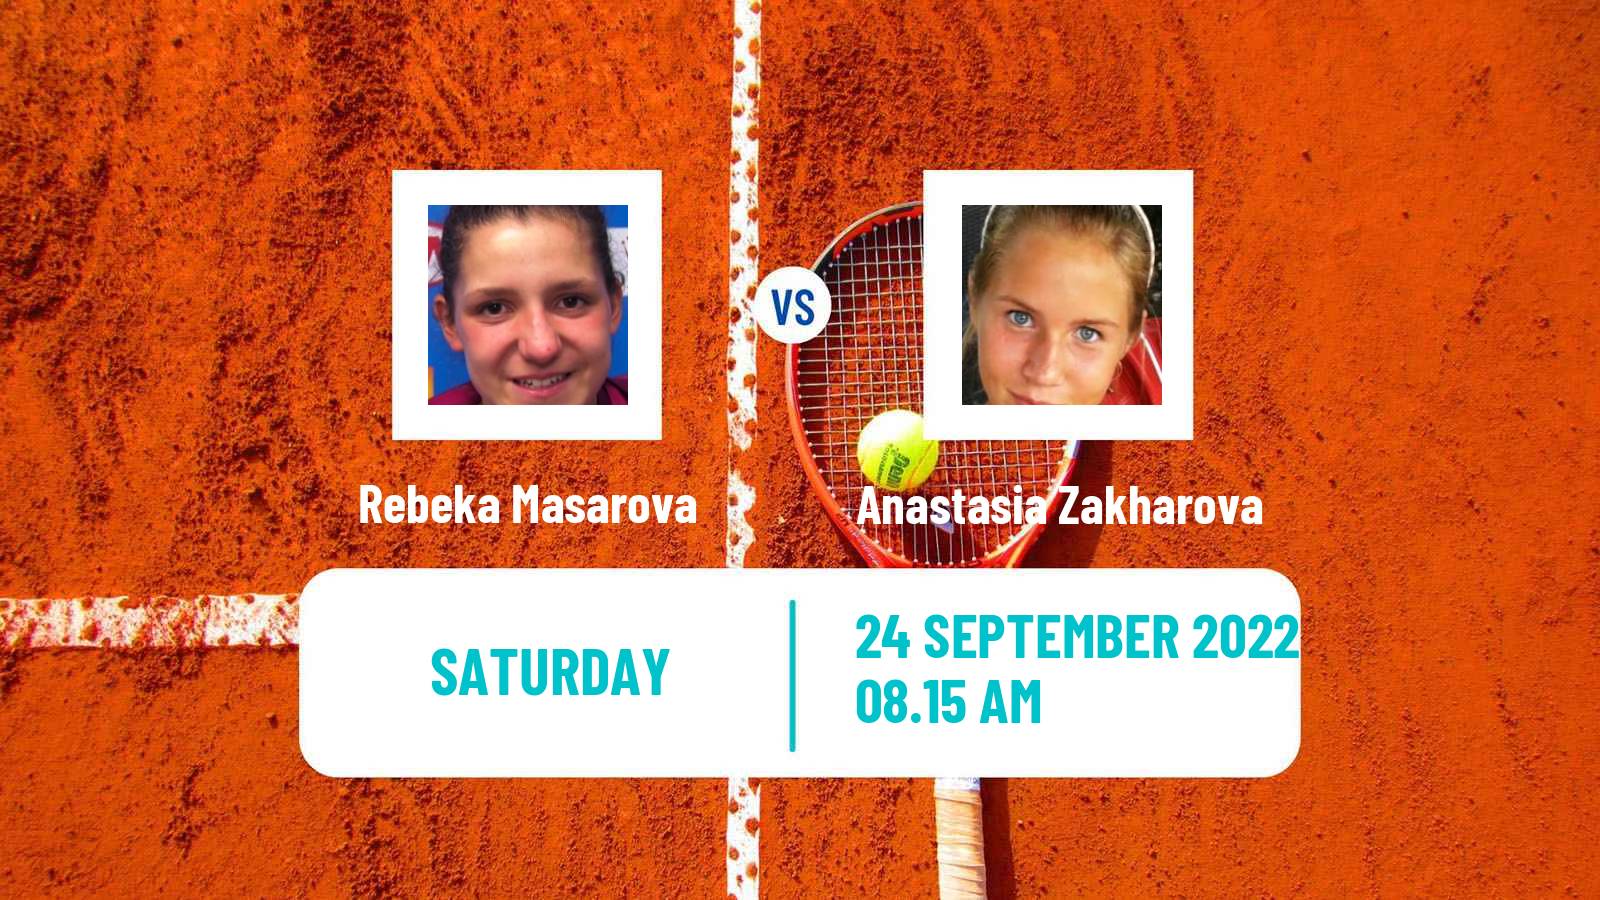 Tennis WTA Parma Rebeka Masarova - Anastasia Zakharova